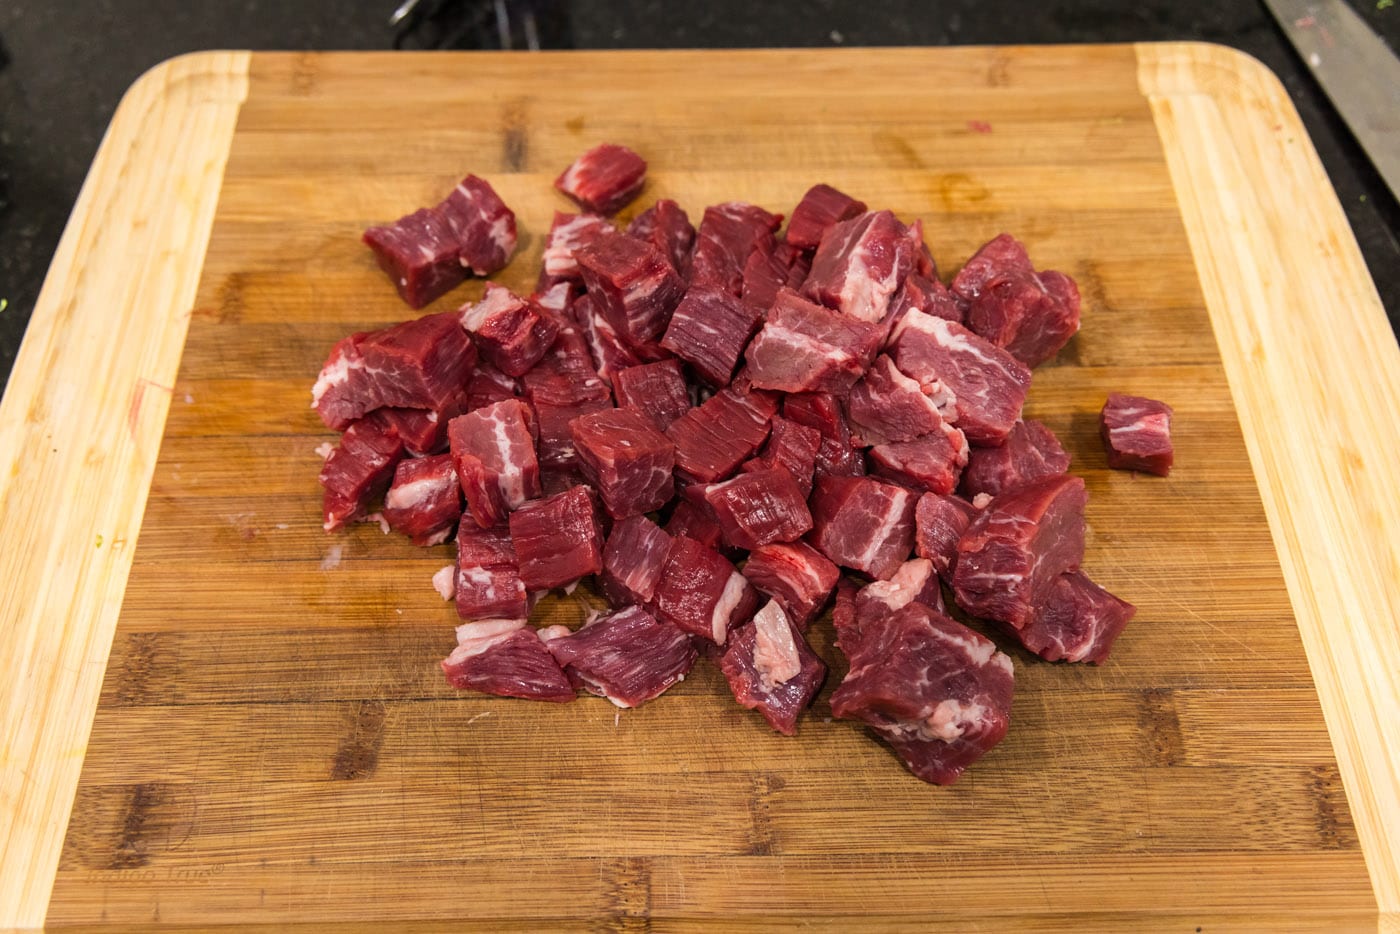 flank steak cubed on a cutting board